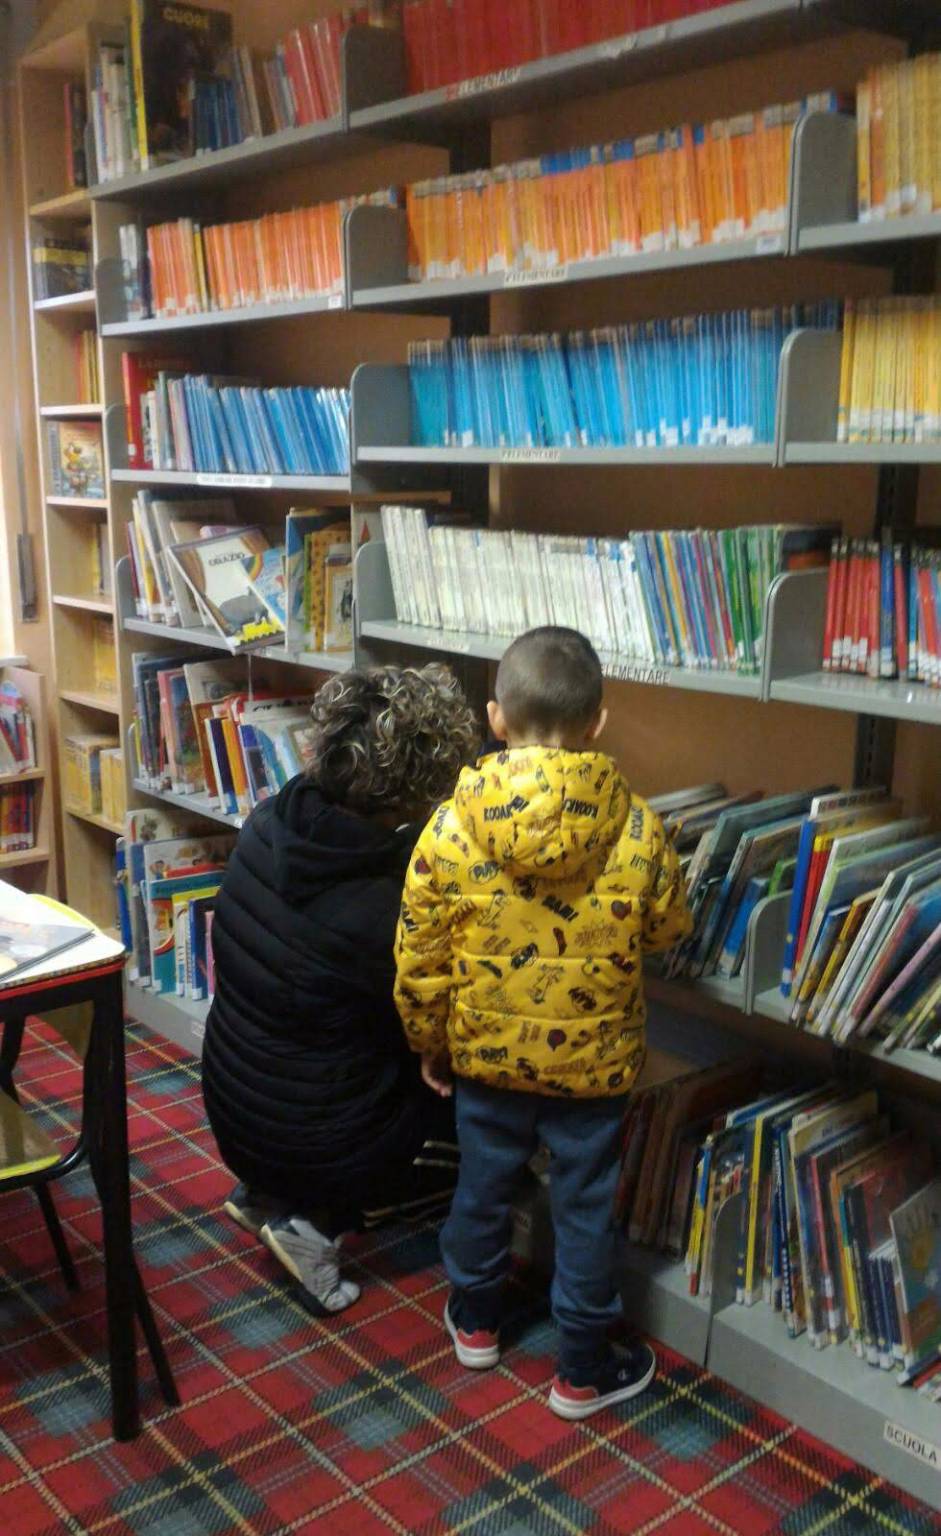 Quasi tredicimila volumi dati in prestito dalle biblioteche cheraschesi nel 2019 